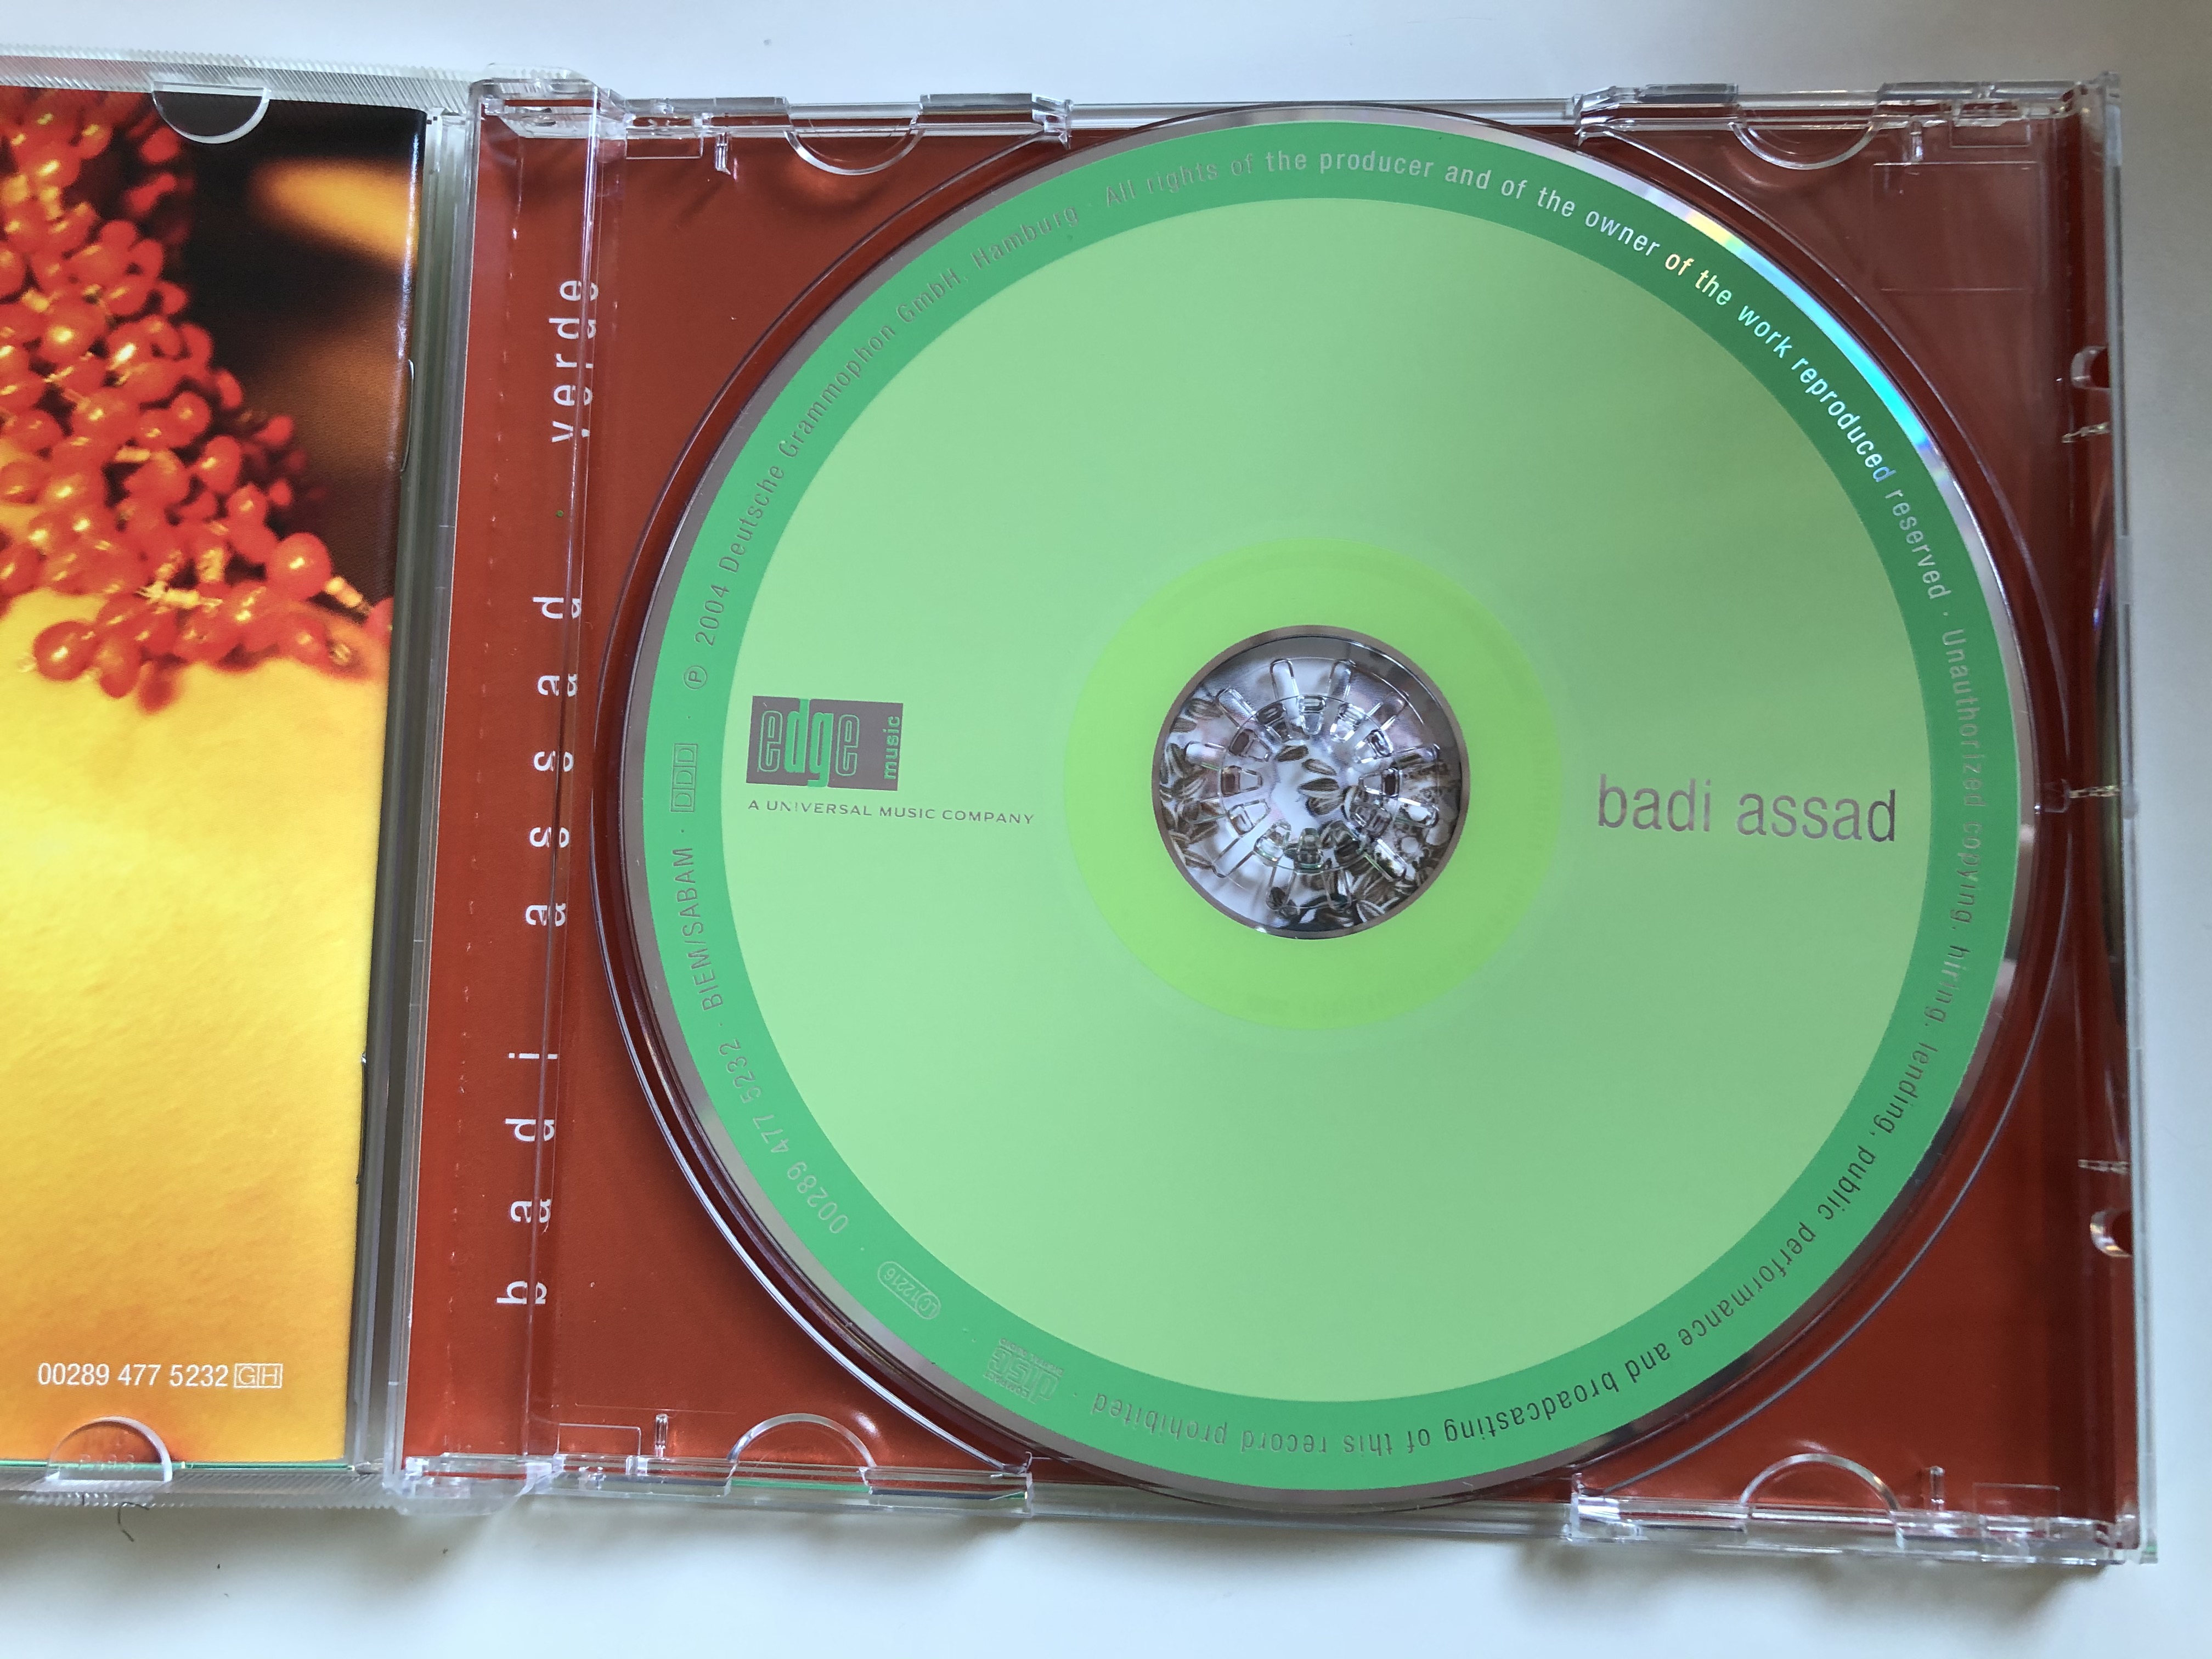 badi-assad-verde-featuring-nana-vasconcelos-cordel-do-fogo-encantado-toquinho-edge-music-audio-cd-2004-00289-477-5232-2-.jpg